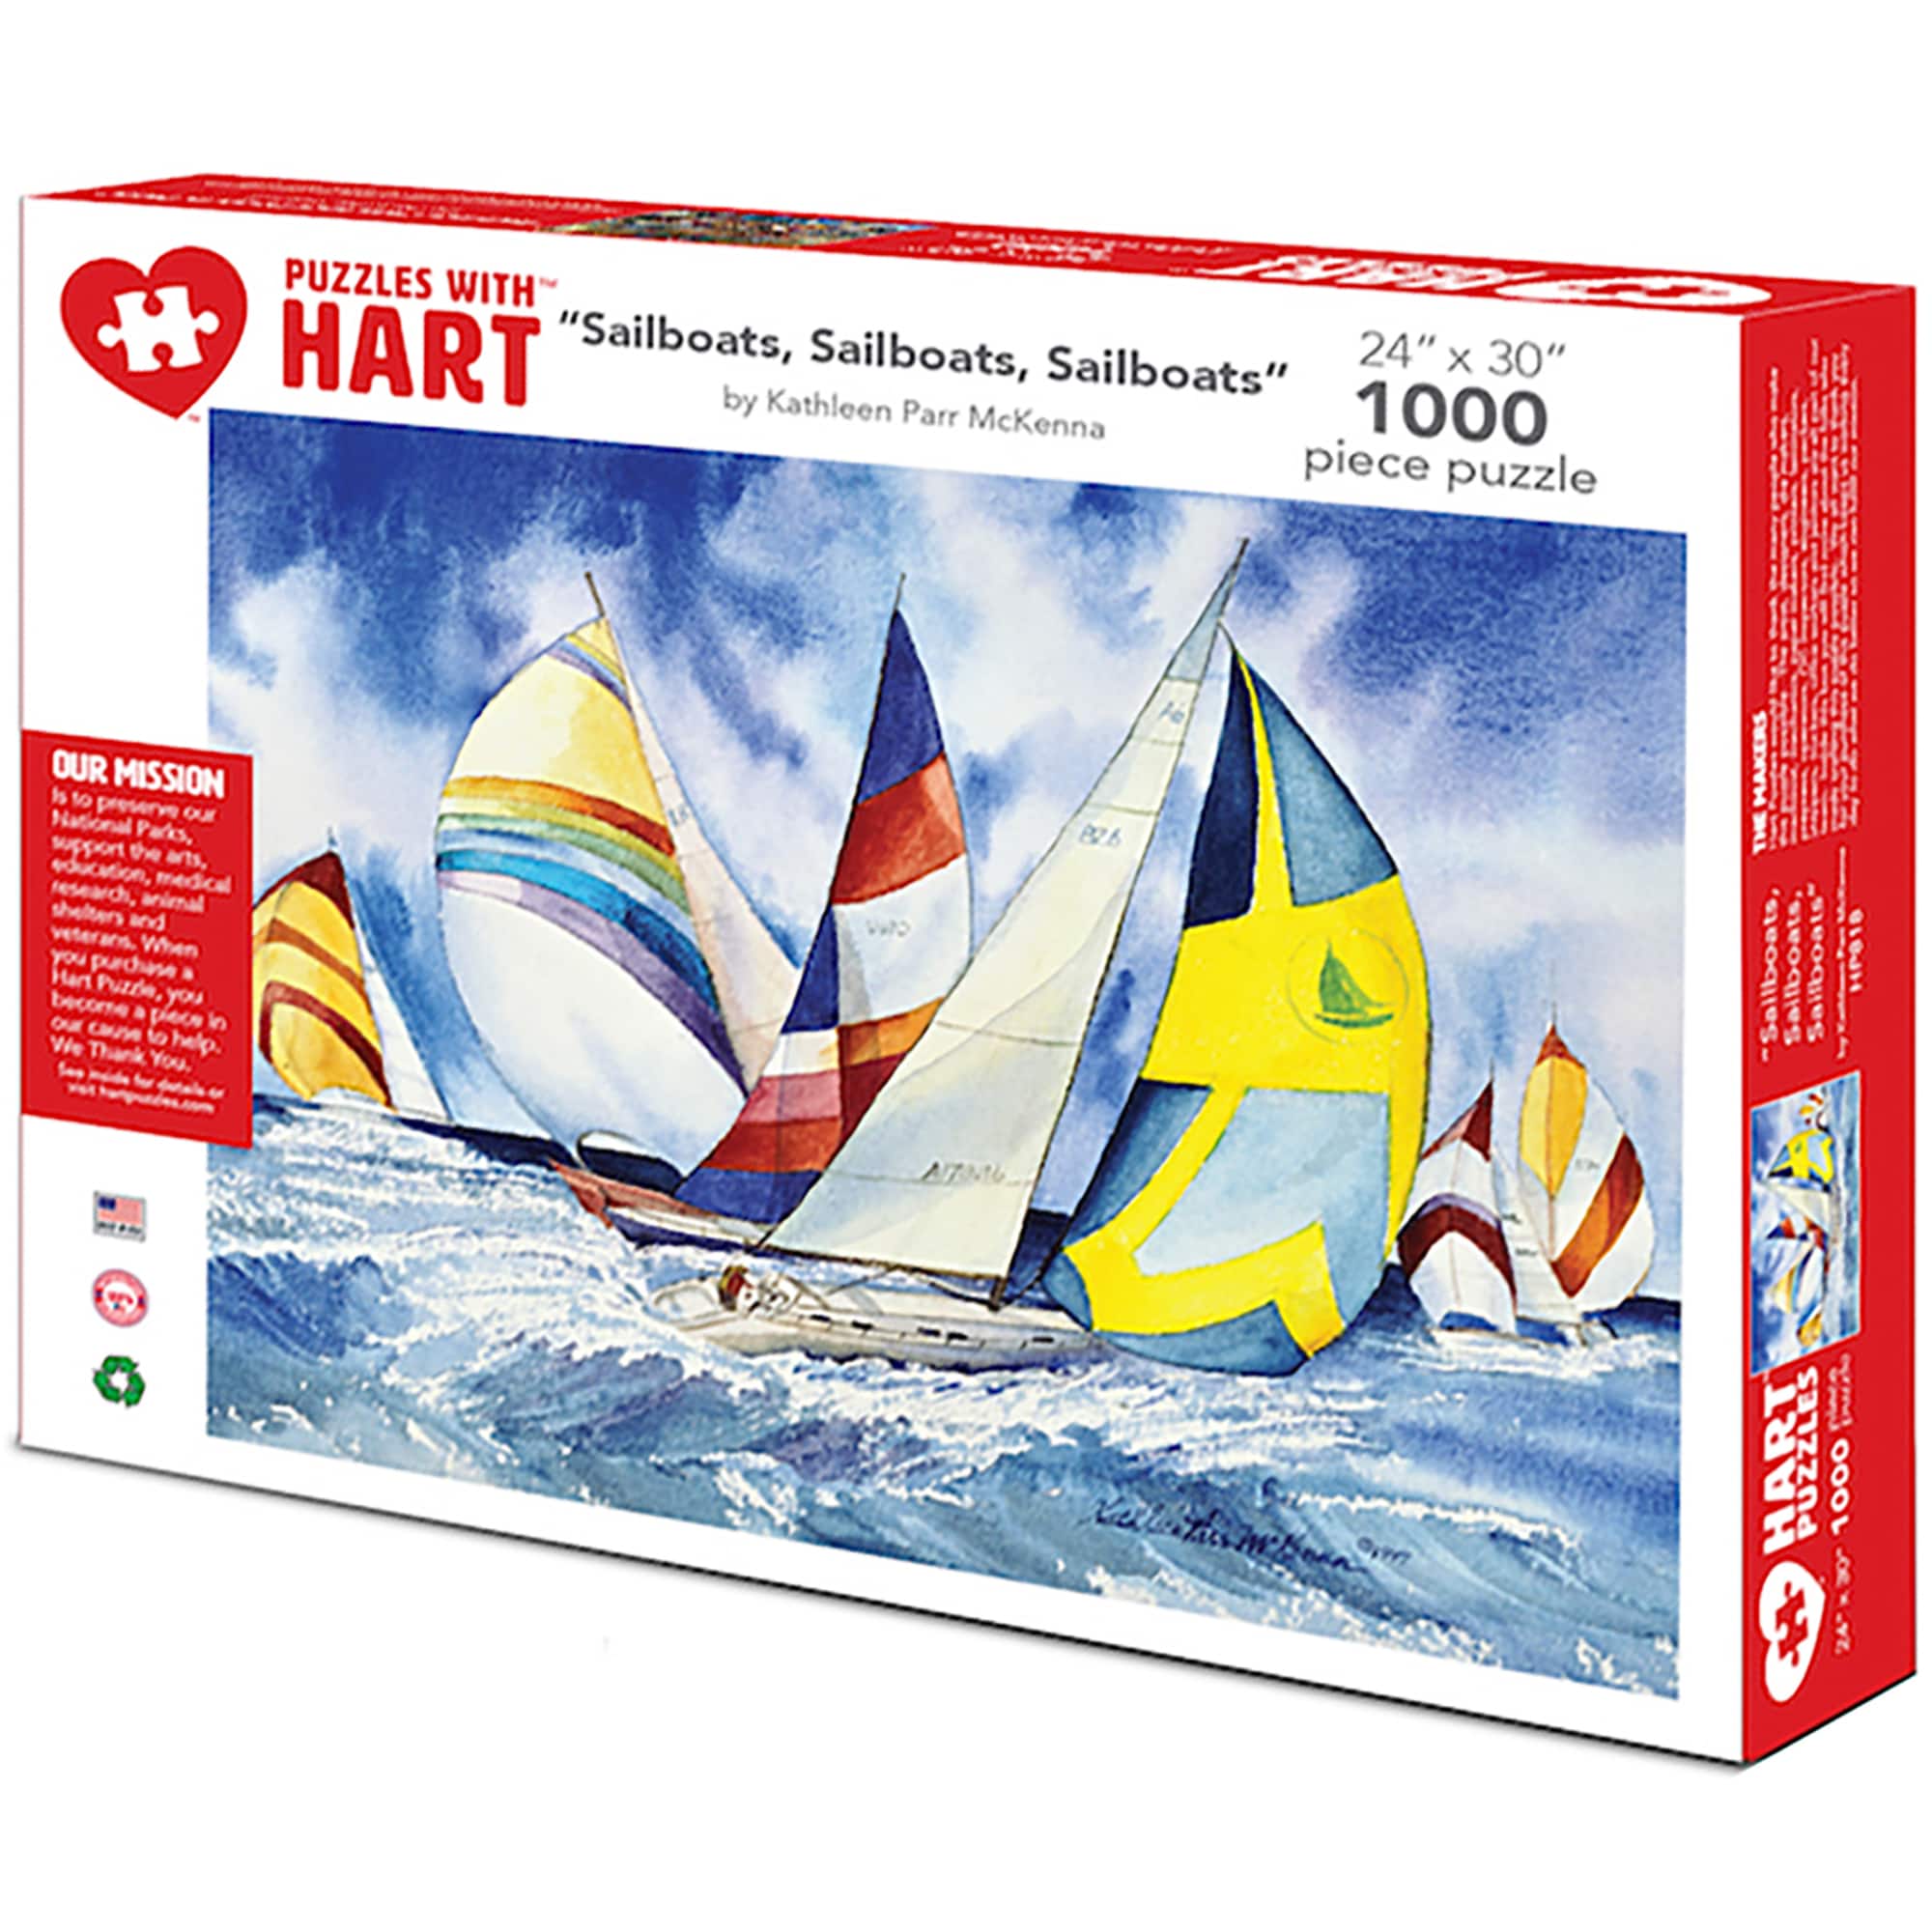 Hart Puzzles Sailboats, Sailboats, Sailboats by Kathleen Parr McKenna 1,000 Piece Jigsaw Puzzle